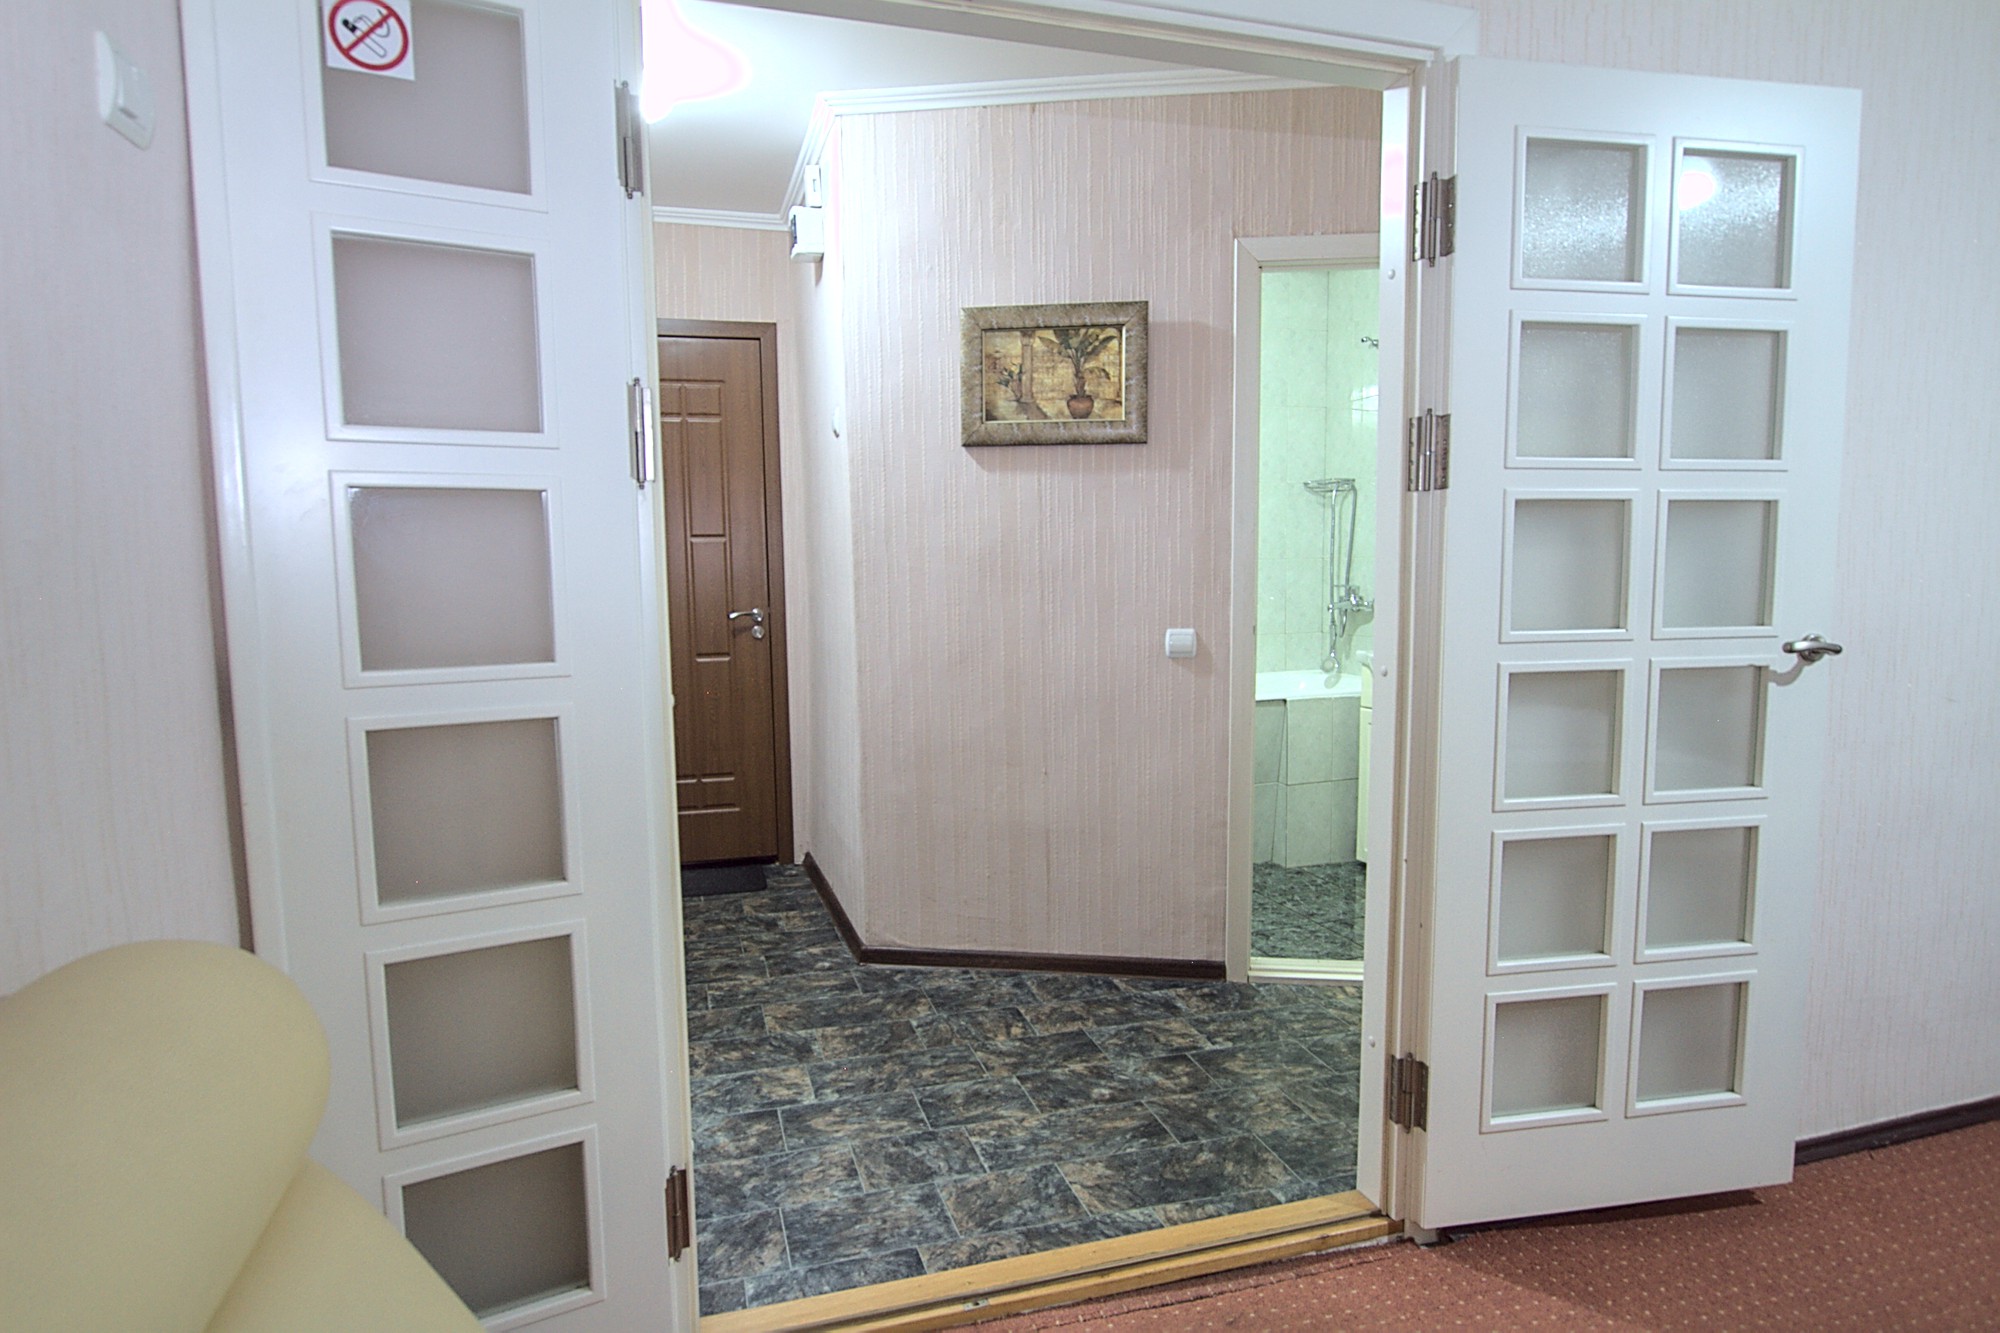 Boulevard Apartment est un appartement de 1 chambre à louer à Chisinau, Moldova